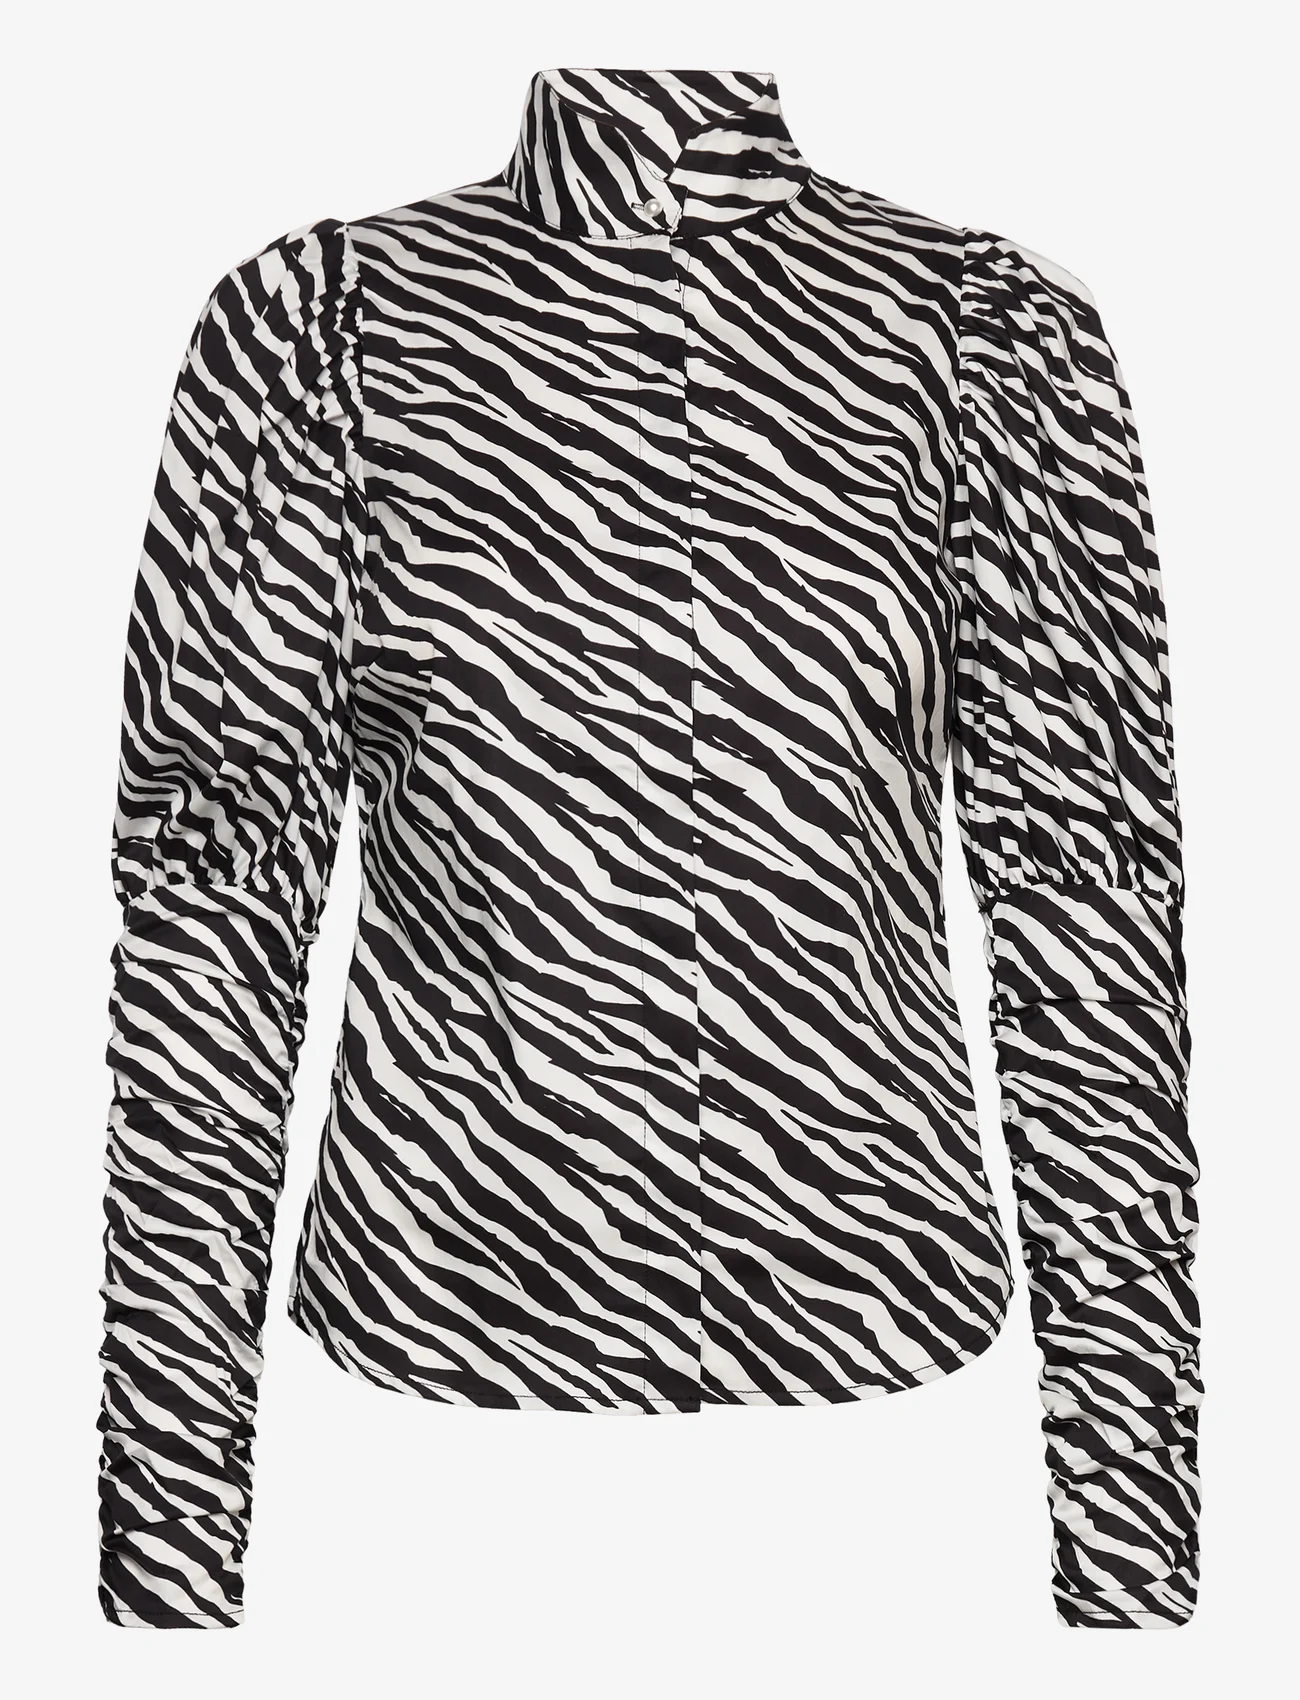 Notes du Nord - Nila Shirt P - långärmade skjortor - zebra - 0